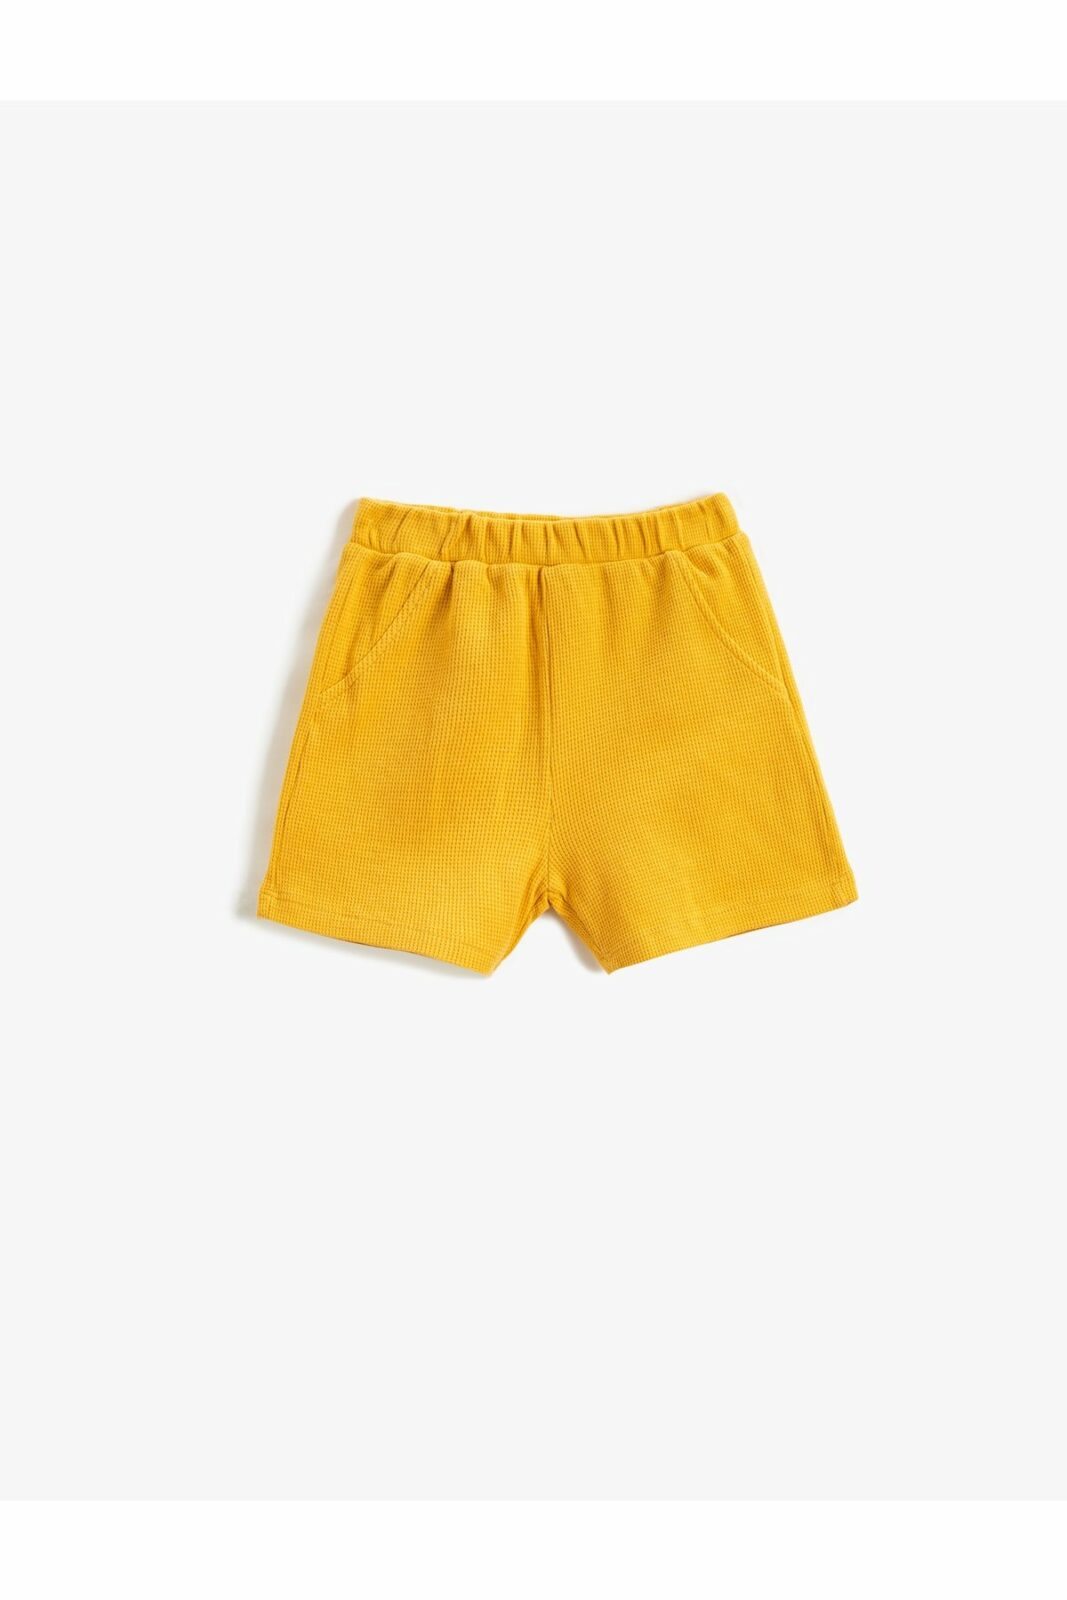 Koton Shorts - Yellow -